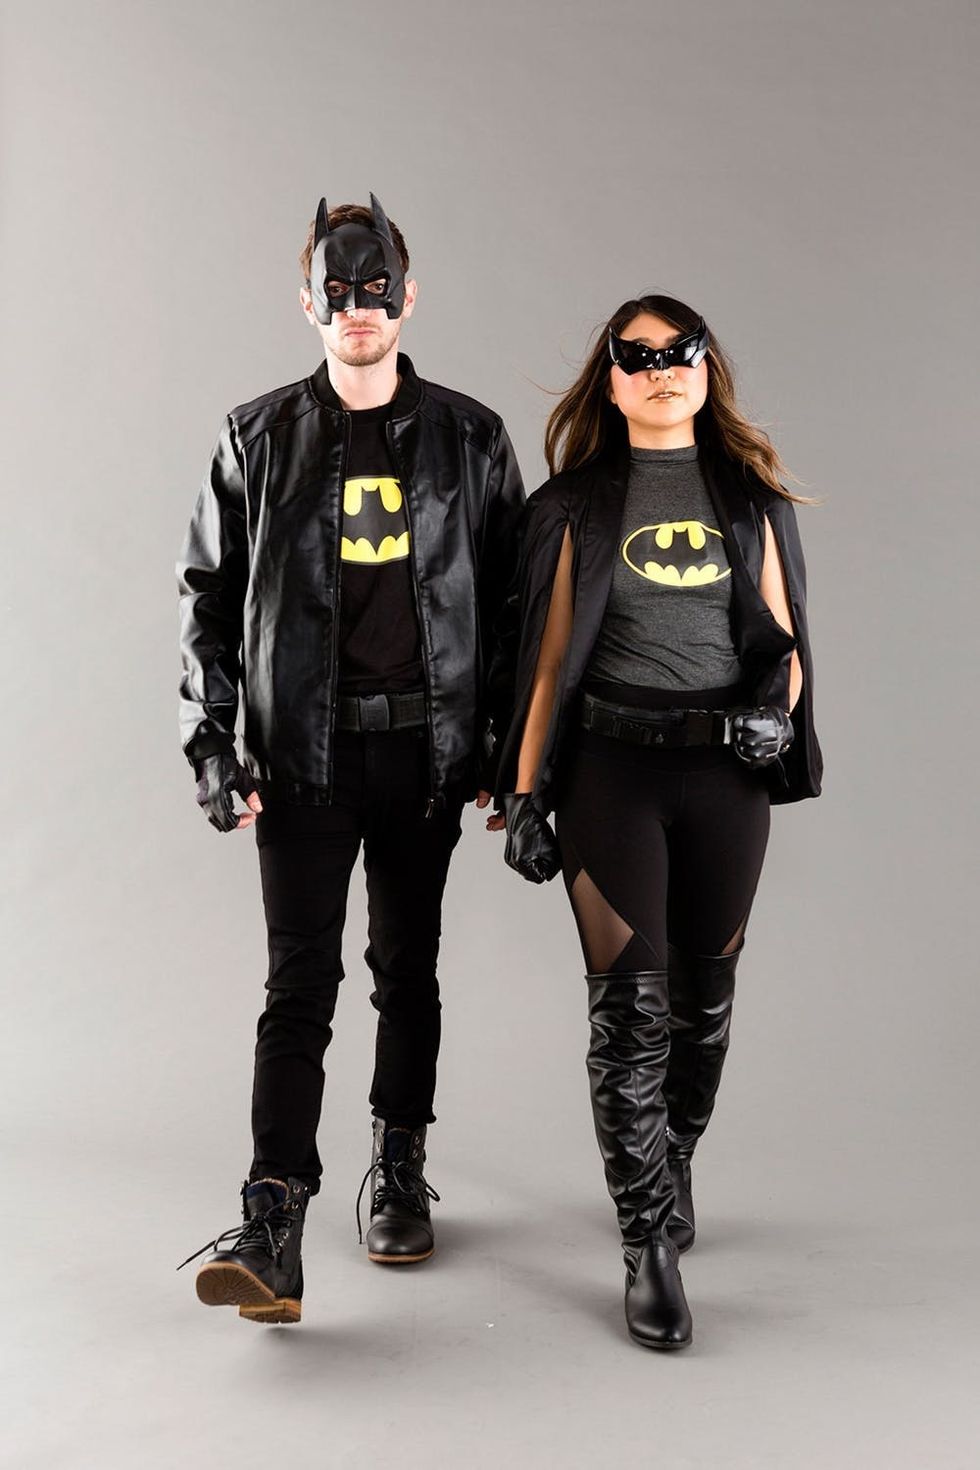 Batman and Batgirl couples costume idea